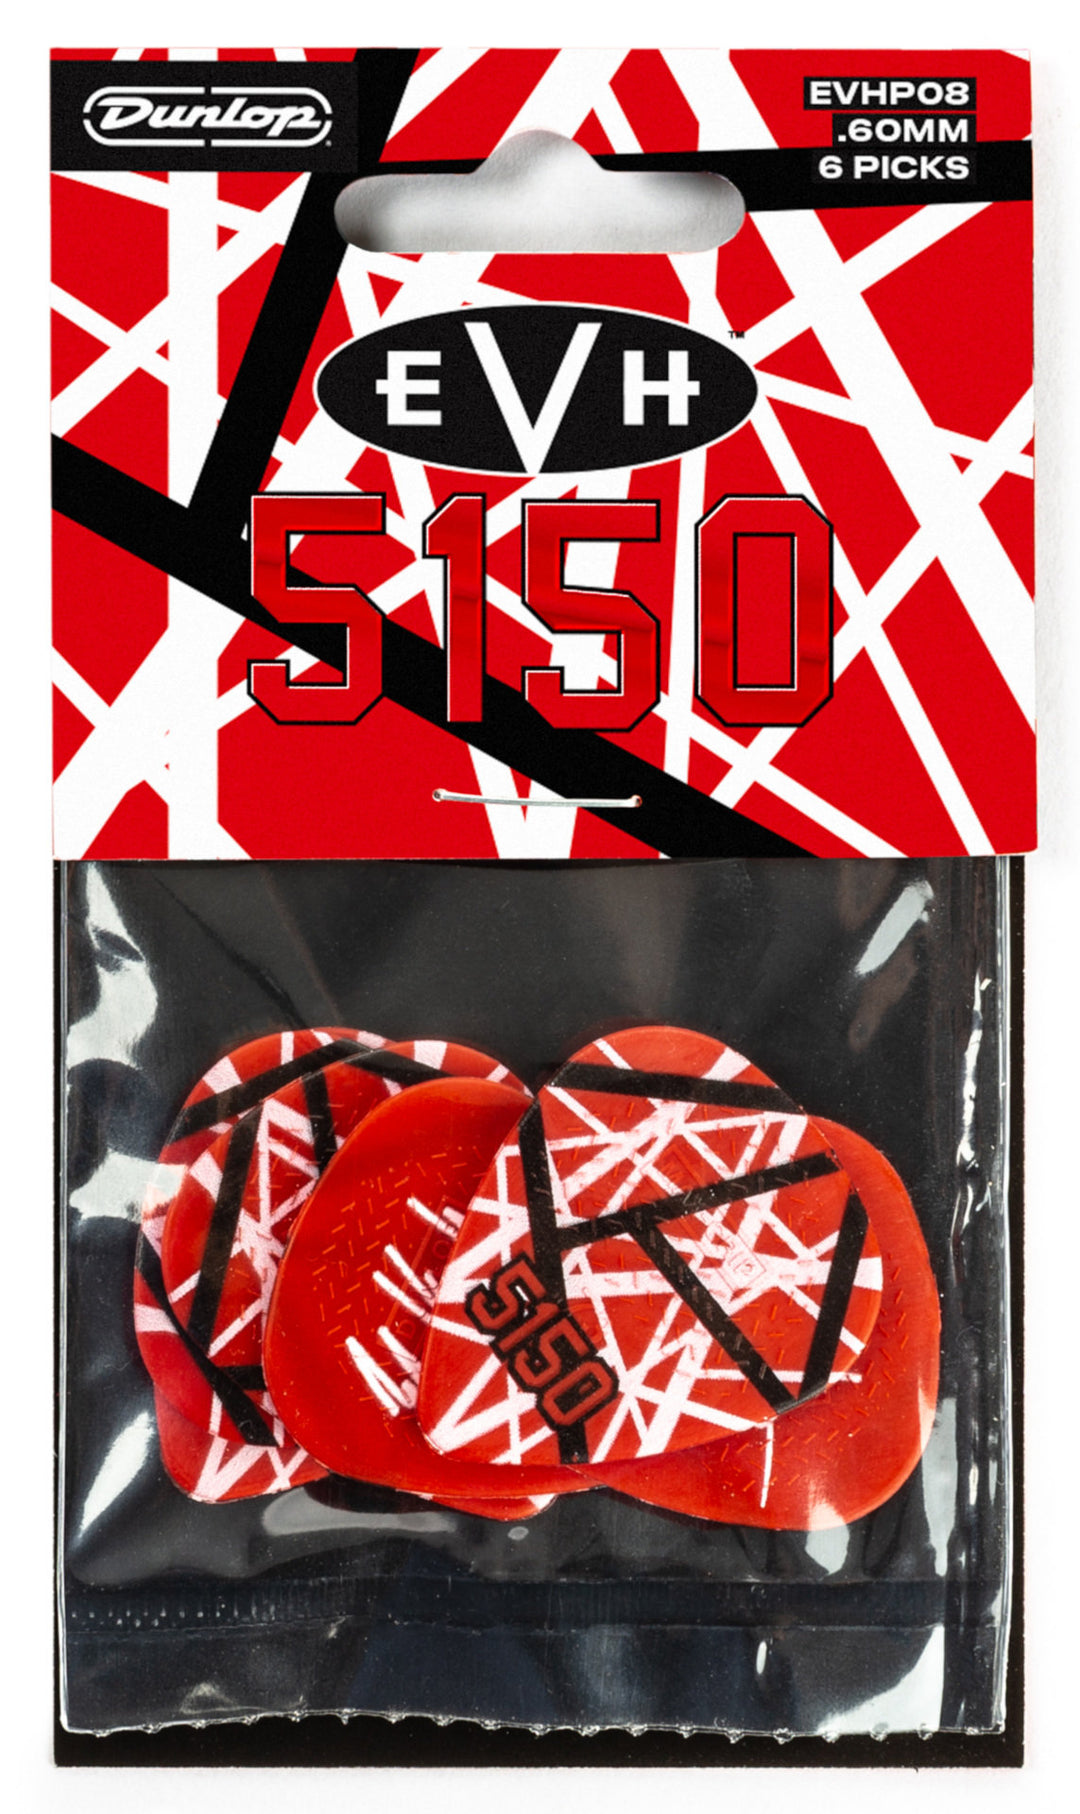 Jim Dunlop EVH "5150" Signature Max Grip Plectrums, 6-Pack